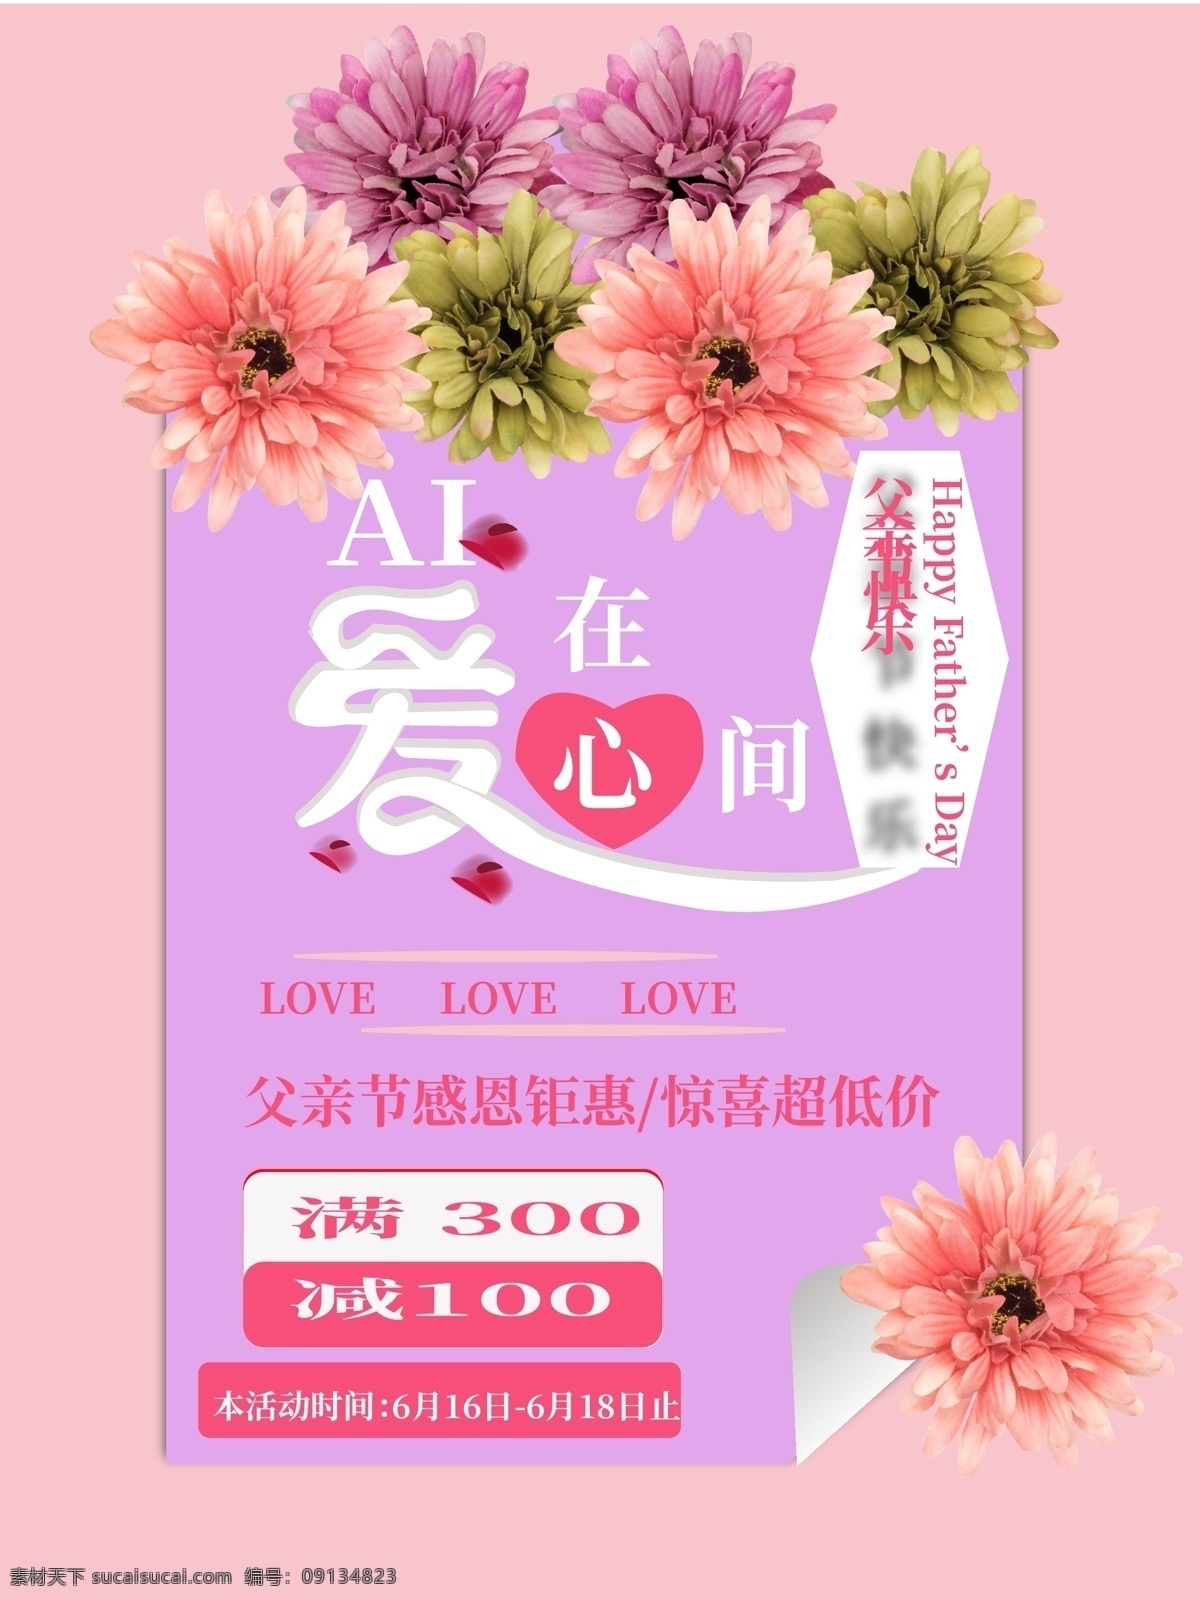 爱 在心 间 粉色 父亲节 促销 海报 爱在心间 促销海报 菊花